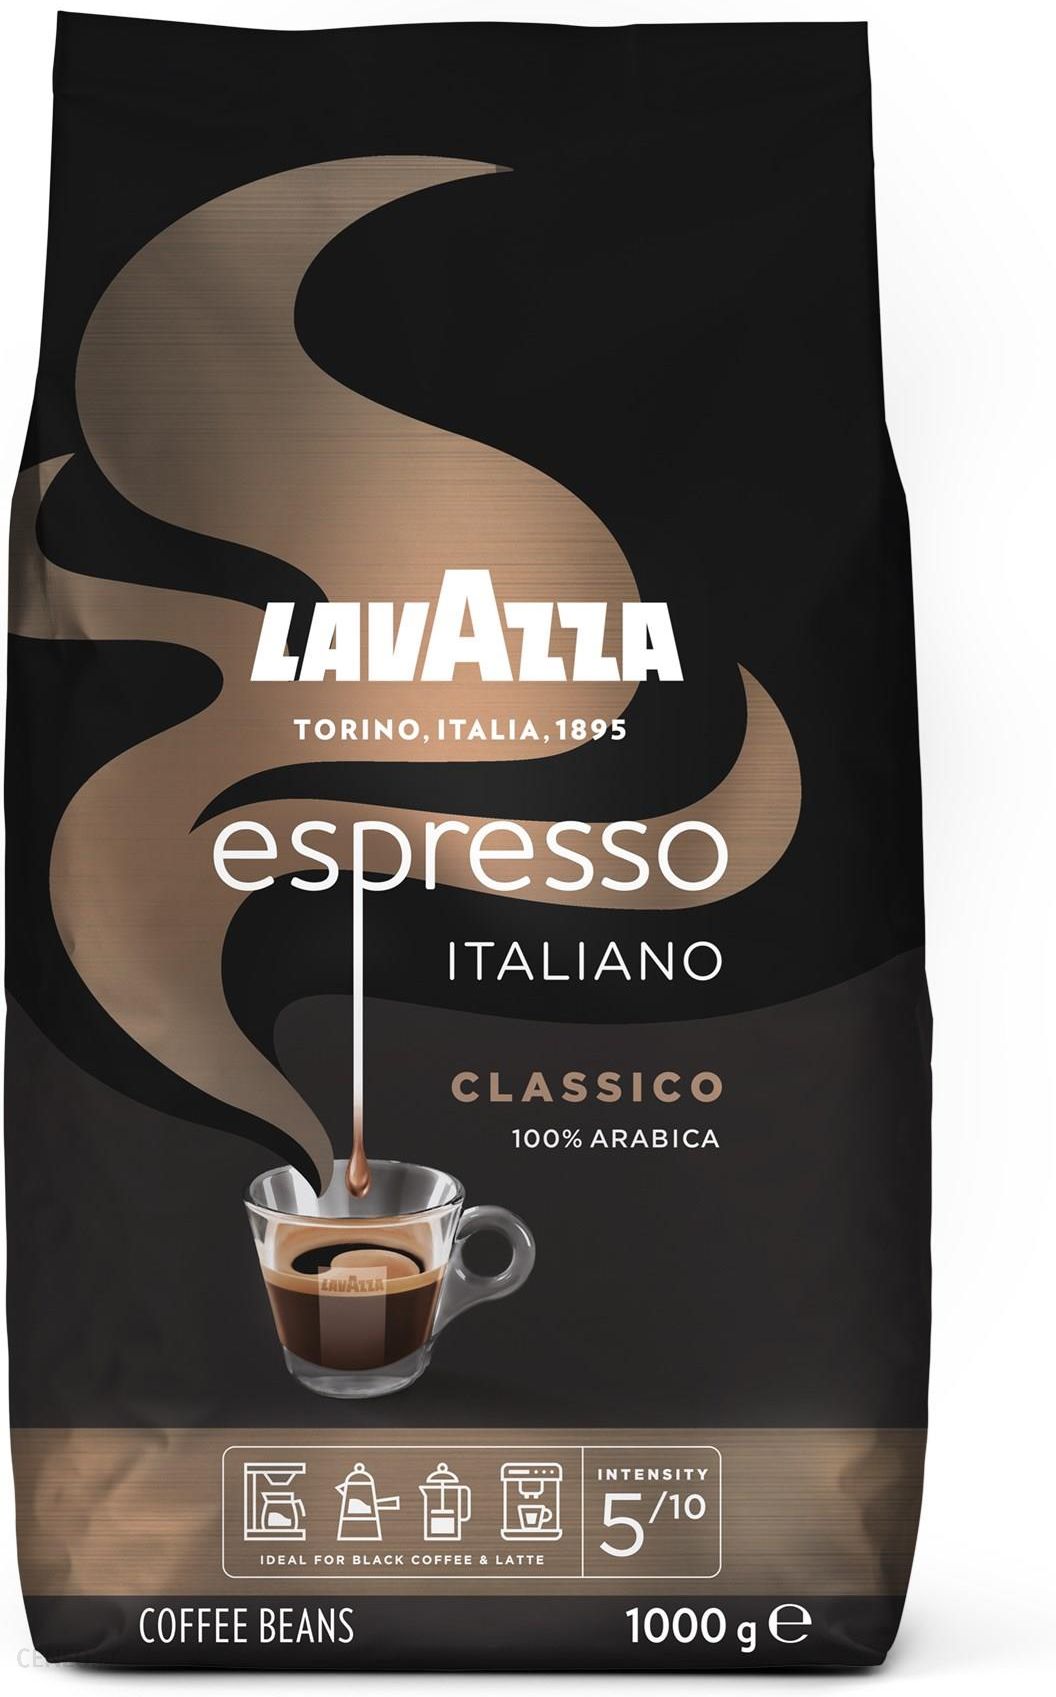 Lavazza Caffe Espresso Italiano Classico ziarnista 1kg